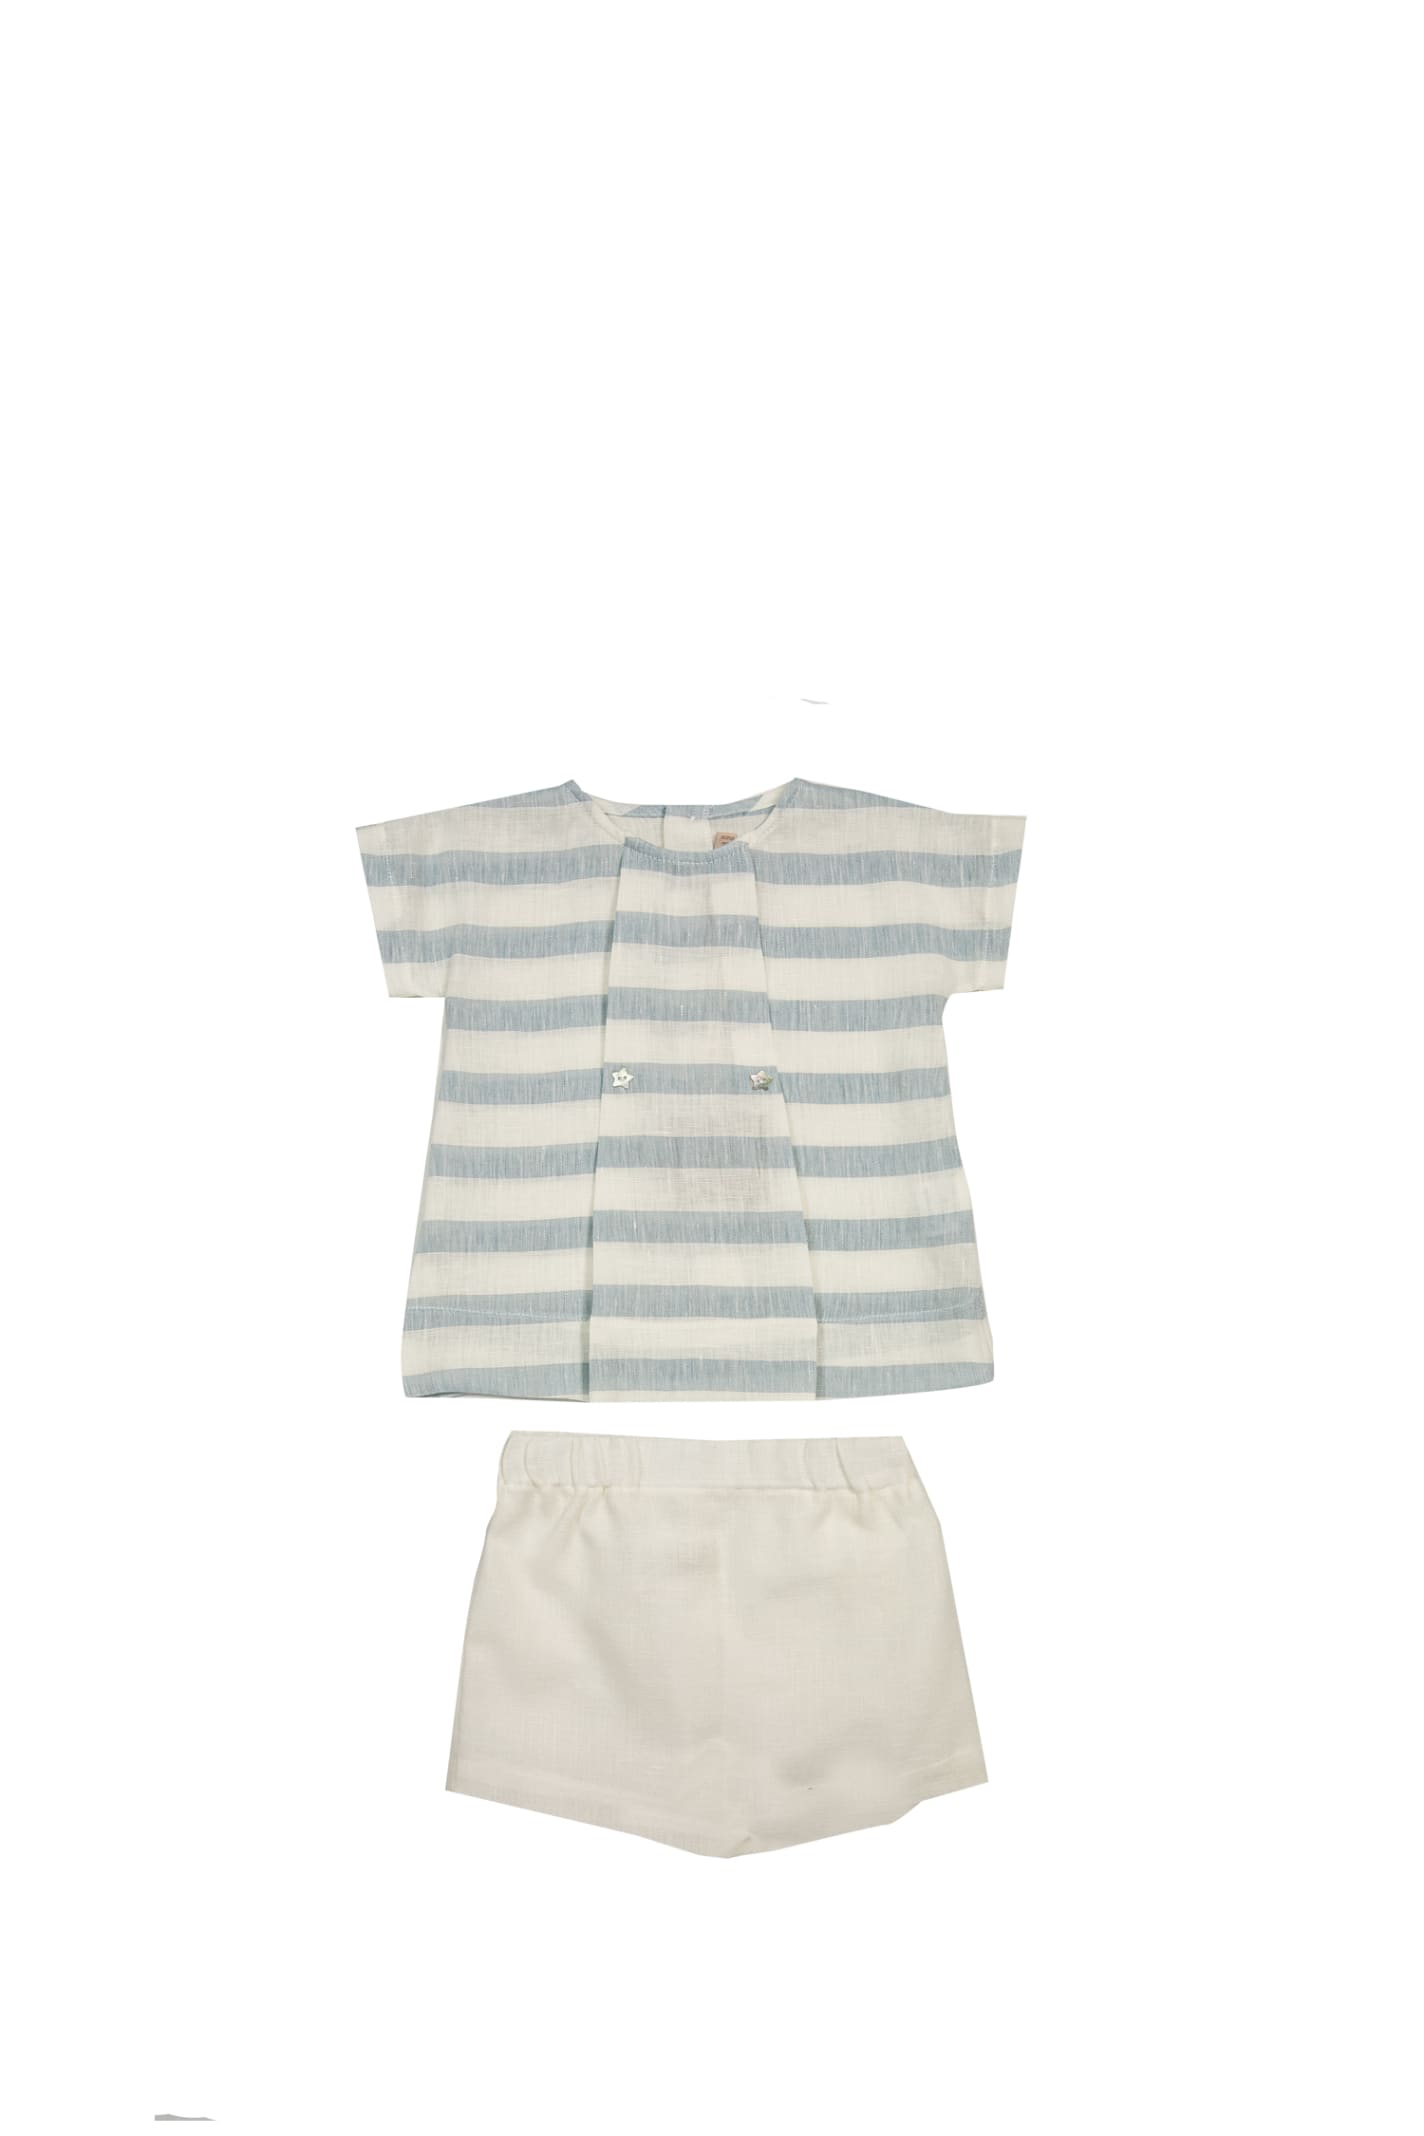 La Stupenderia Kids' Linen T-shirt And Shorts